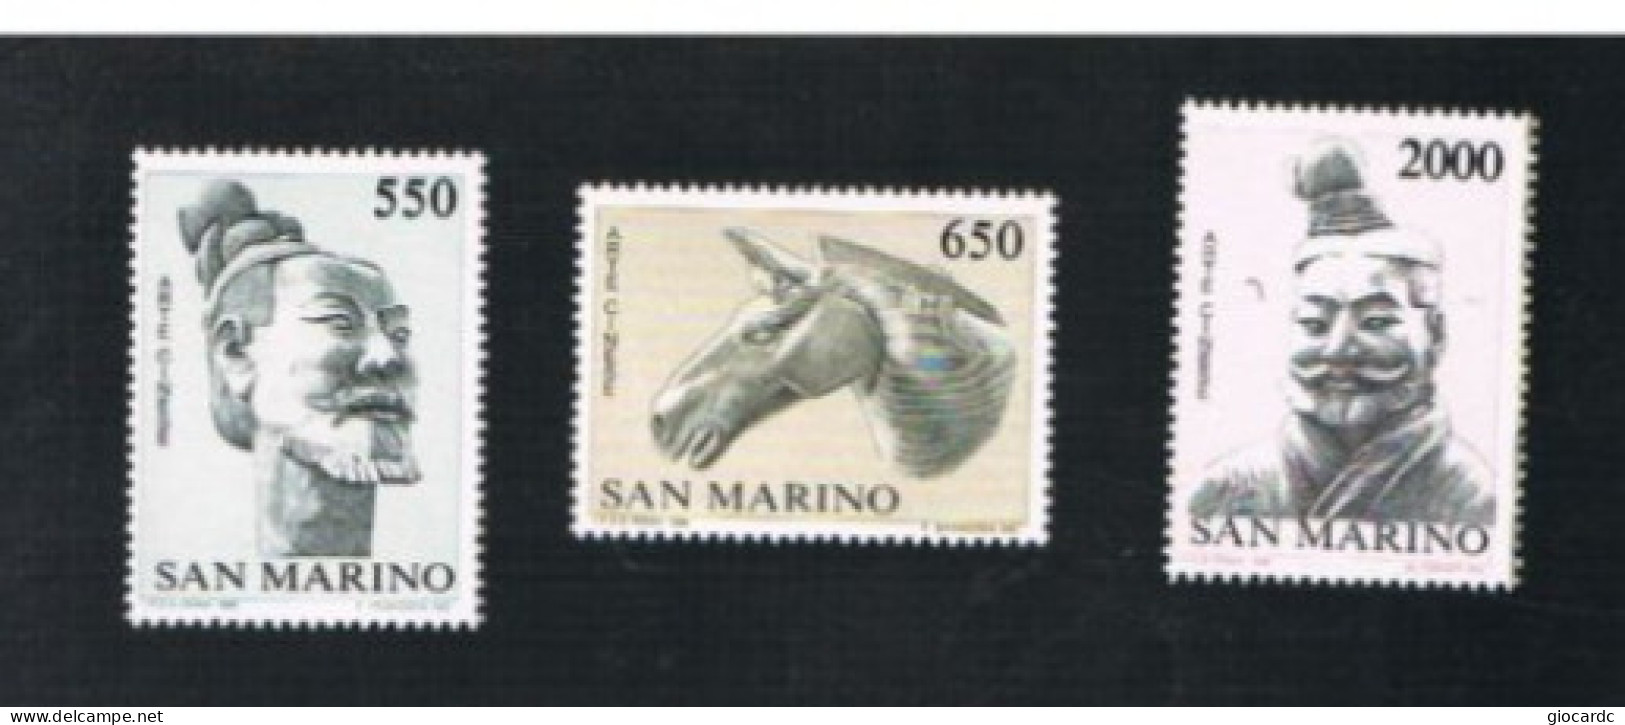 SAN MARINO - UN 1186-1188 - 1986 RAPPORTI UFFICIALI CON REPUBBLICA POPOLARE CINESE( COMPLET SET OF 3, BY BF) - MINT** - Neufs